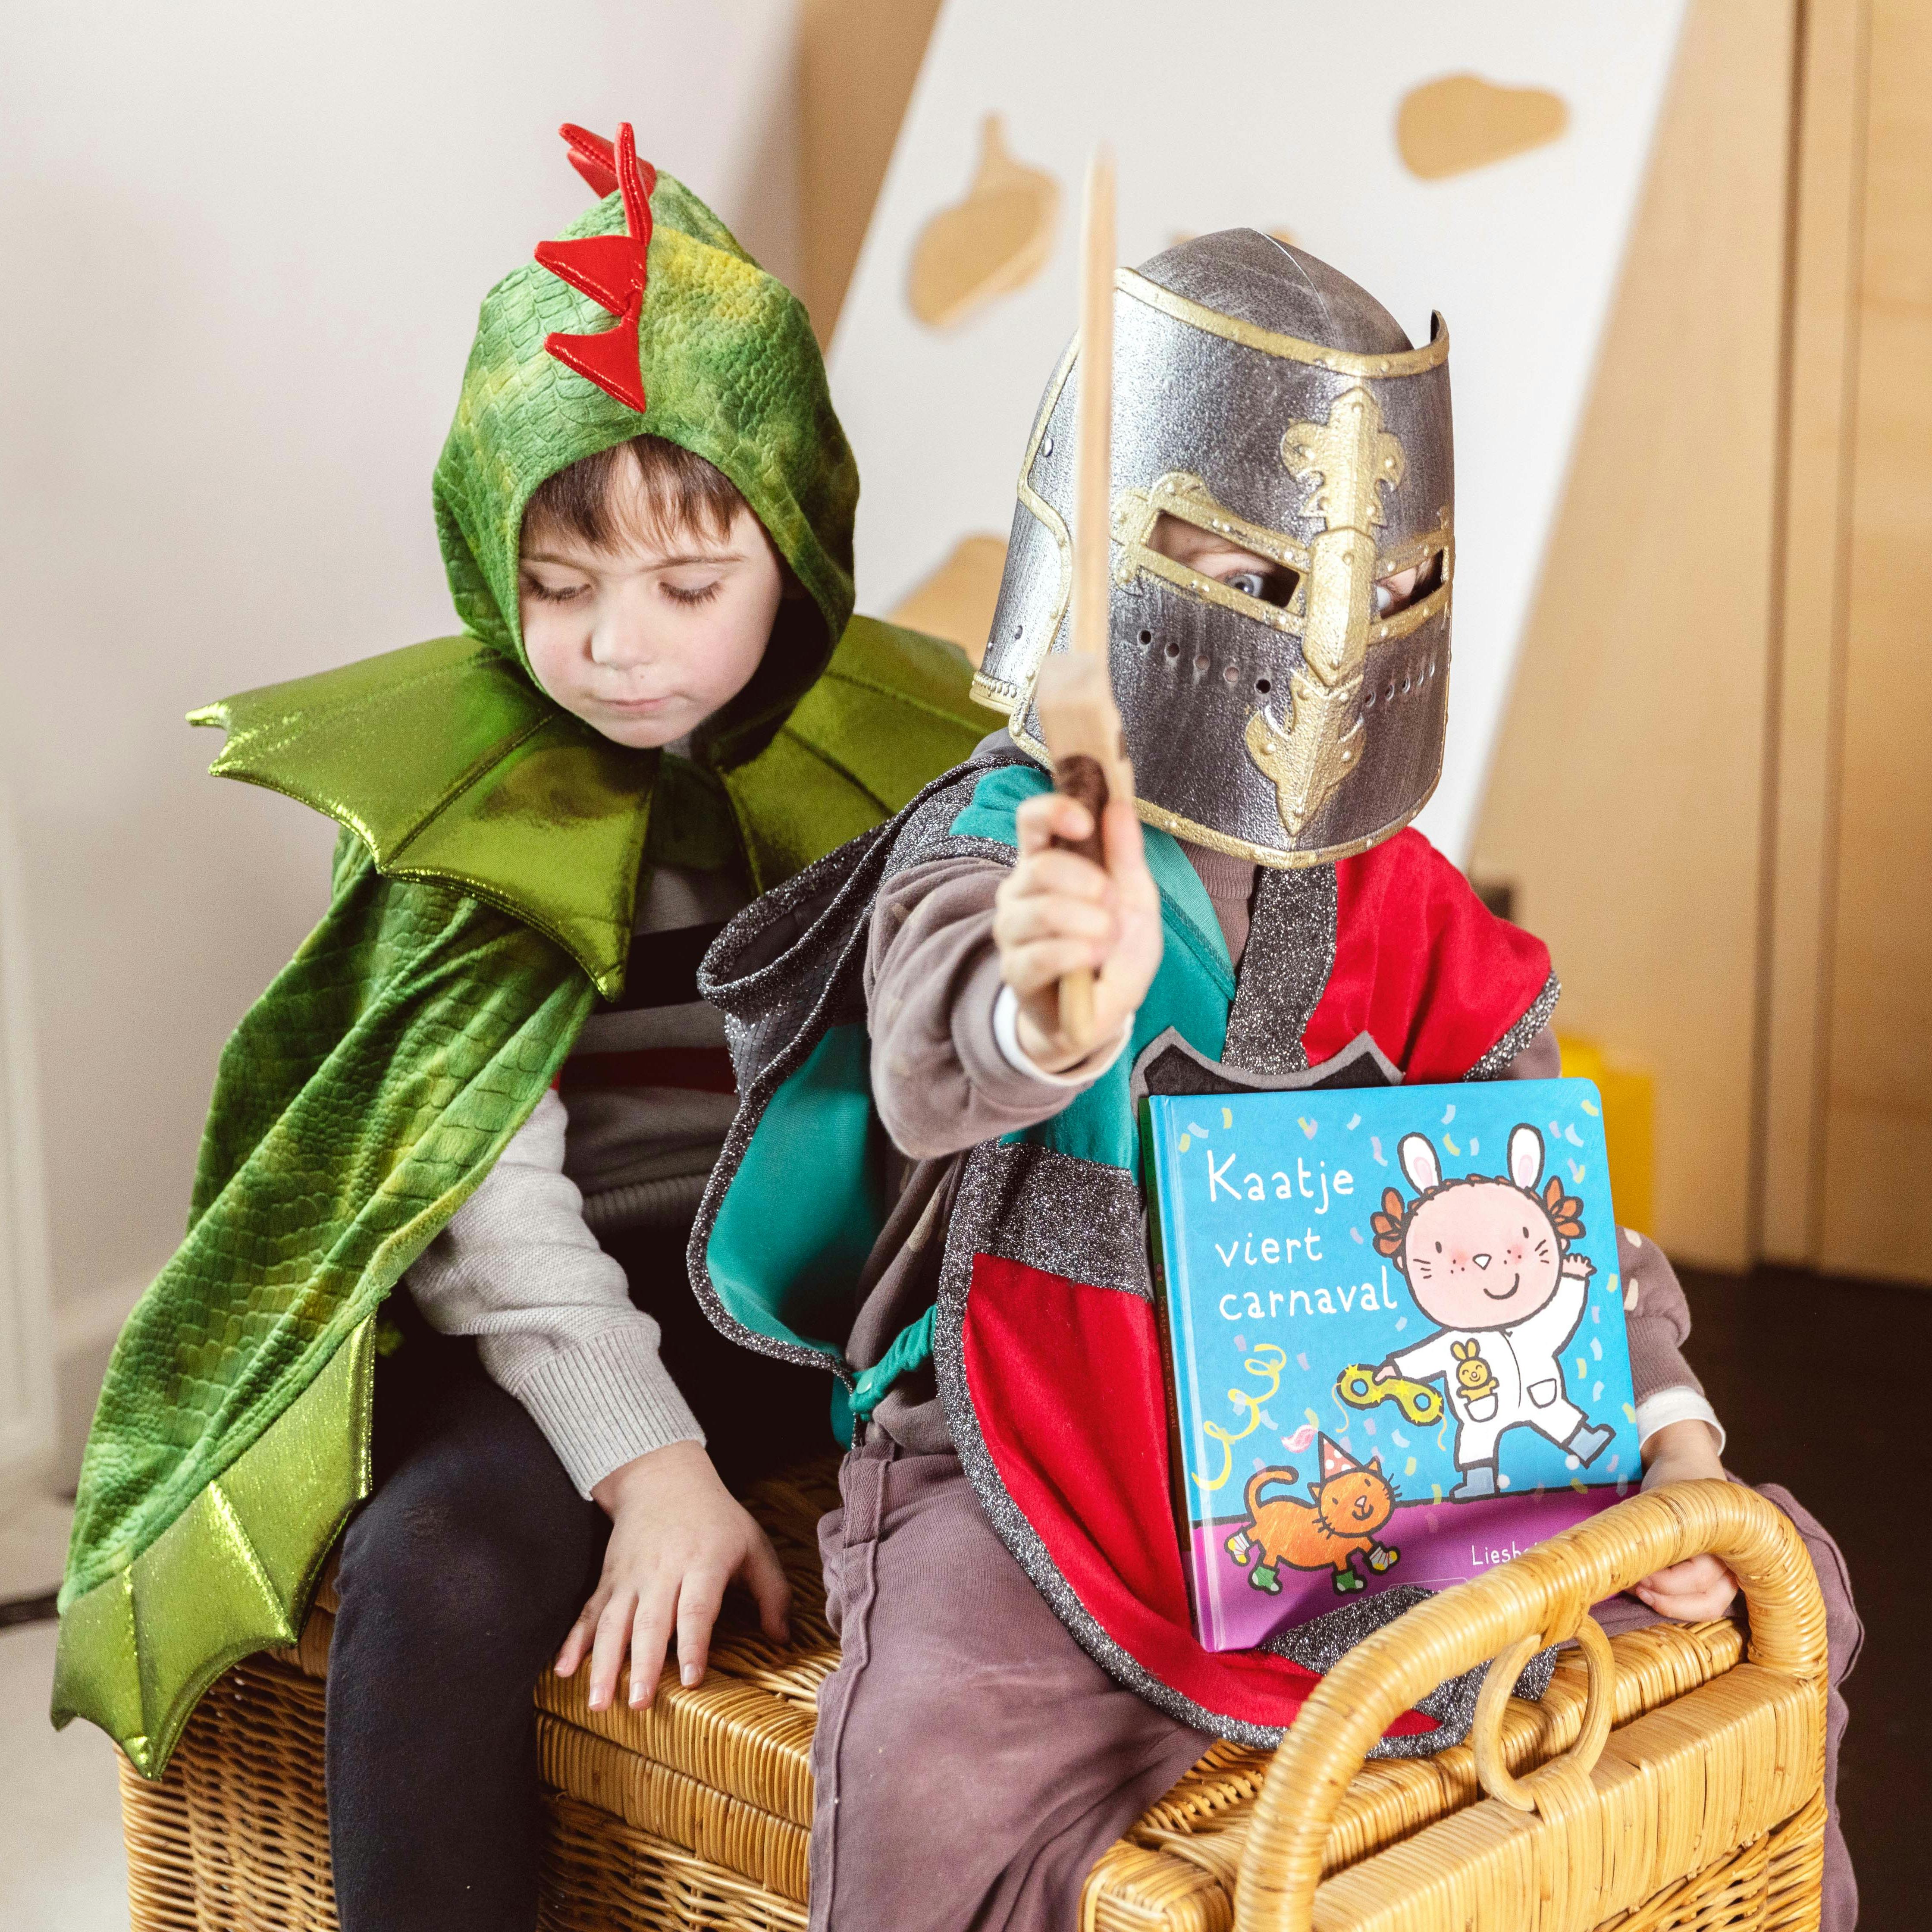 Foto van twee kleuters op een verkleed als draak en ridder op een verkleedkoffer met het carnavalsboek Kaatje viert carnaval van Liesbet Slegers.